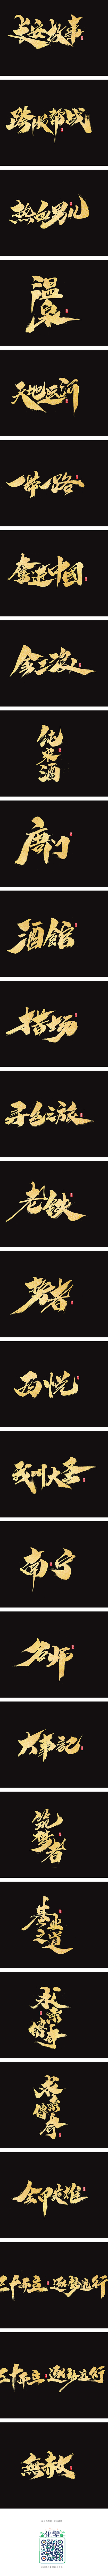 雨泽字绘/七月书法字-字体传奇网-中国首...